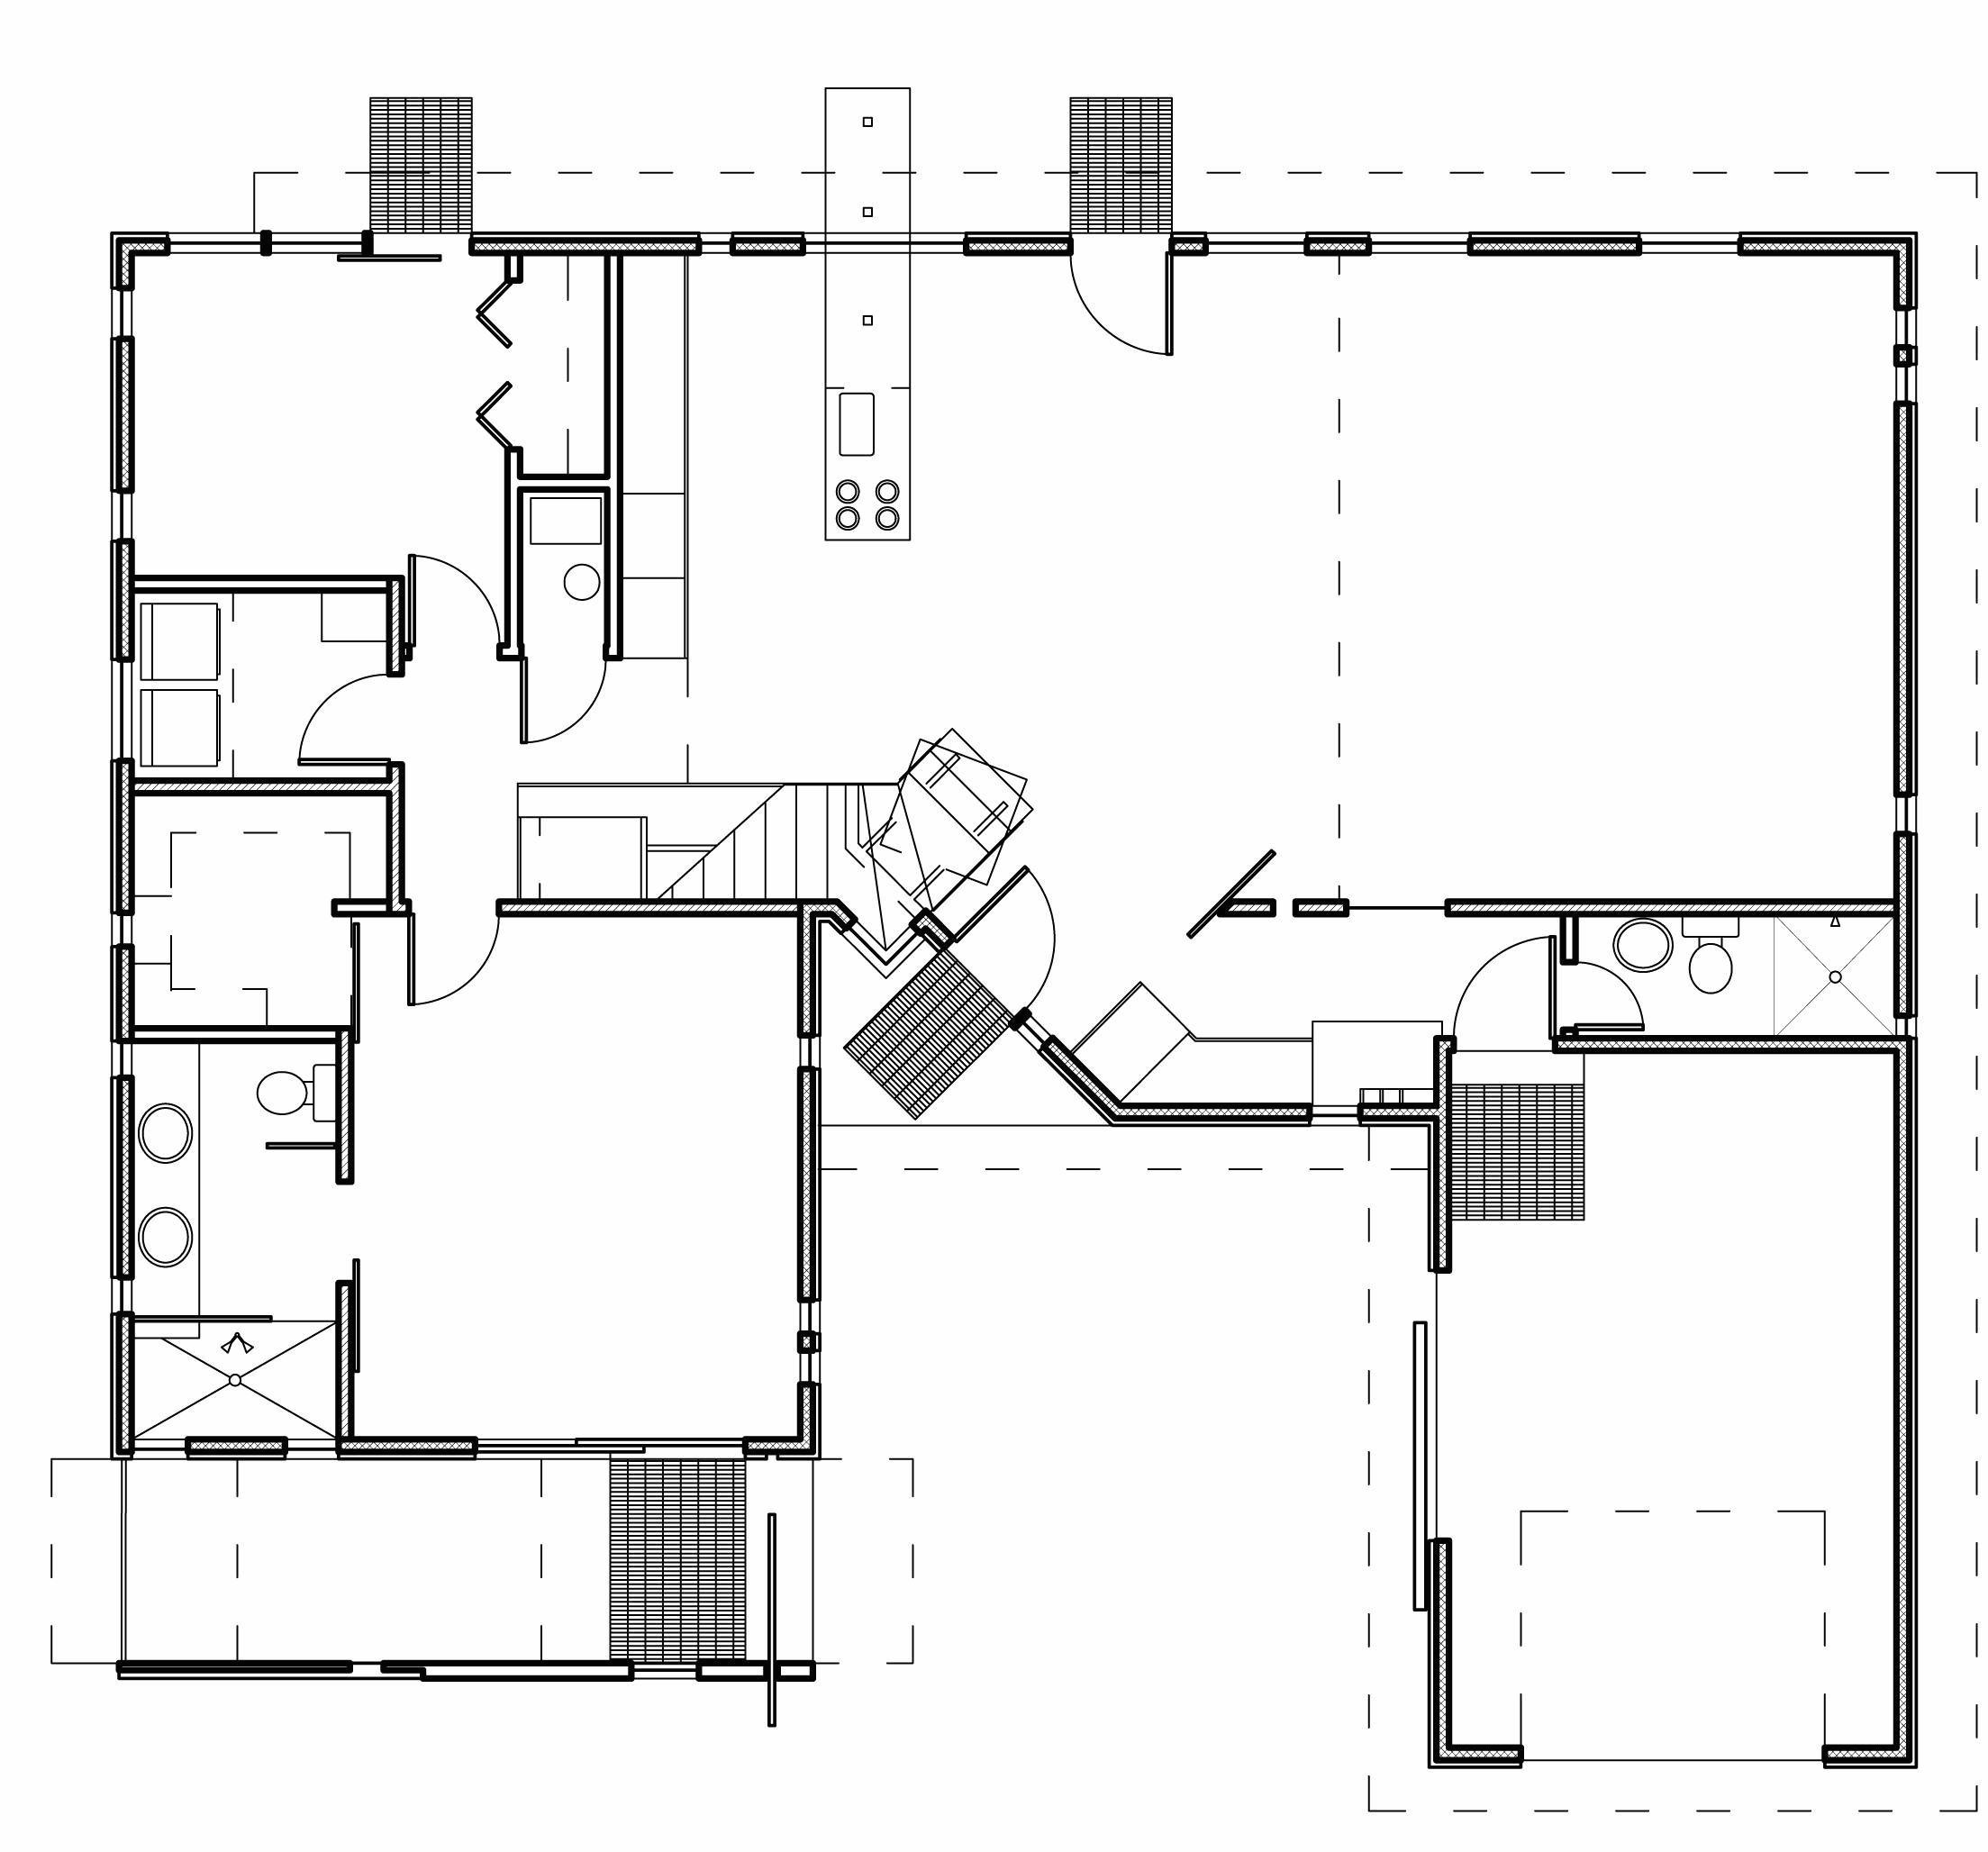 Drawing Ideas Maker 33 Fantastic Basic Floor Plan Maker Ideas Floor Plan Design